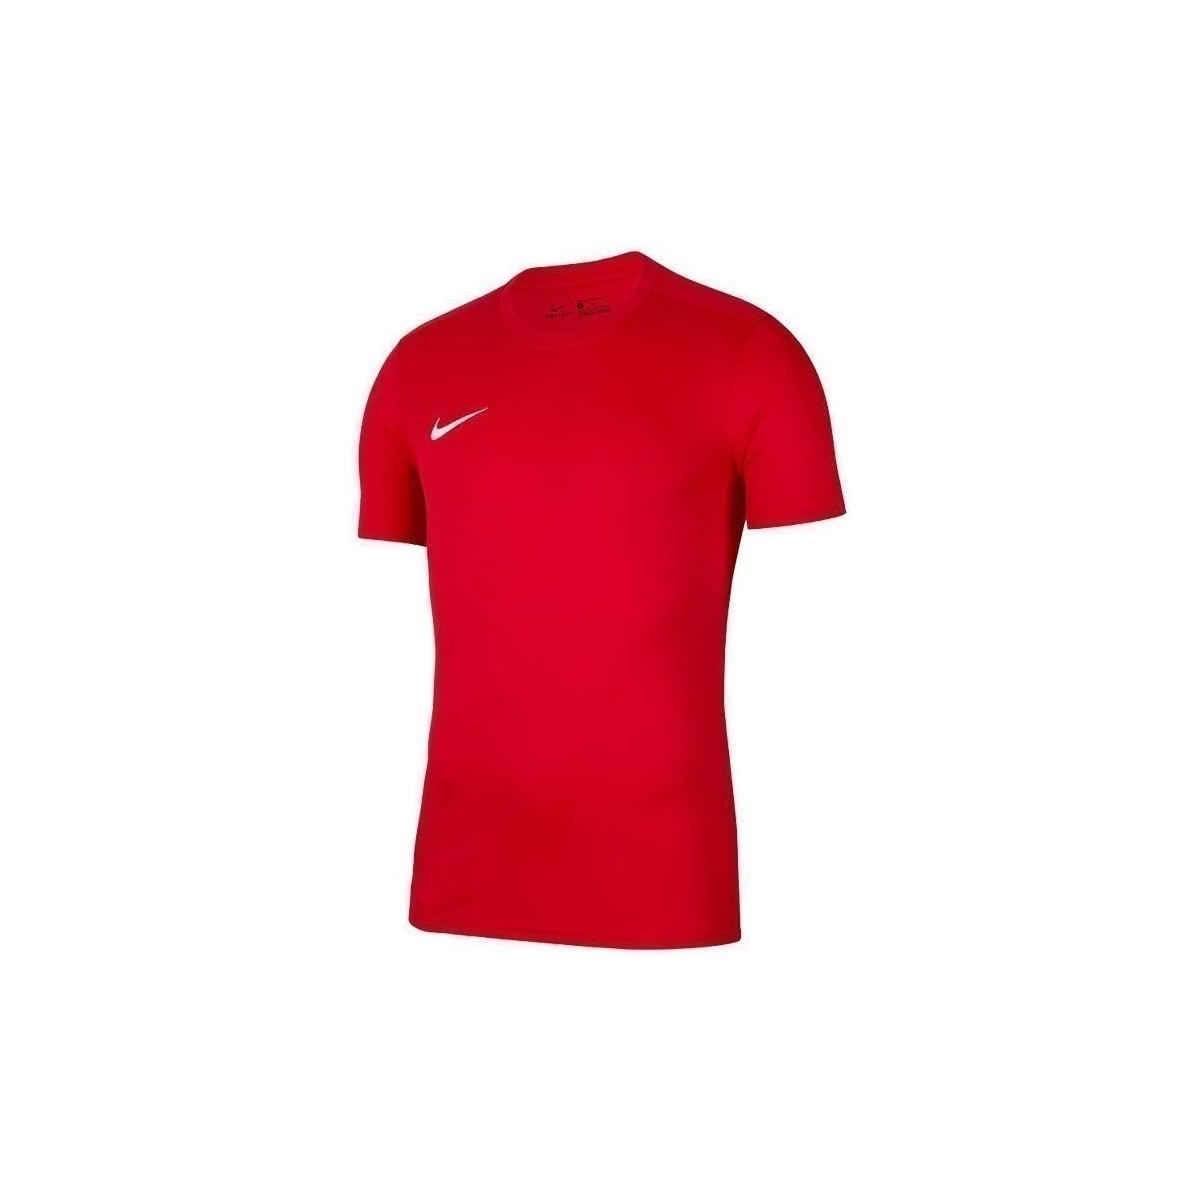 Textil Muži Trička s krátkým rukávem Nike Park Vii Červená